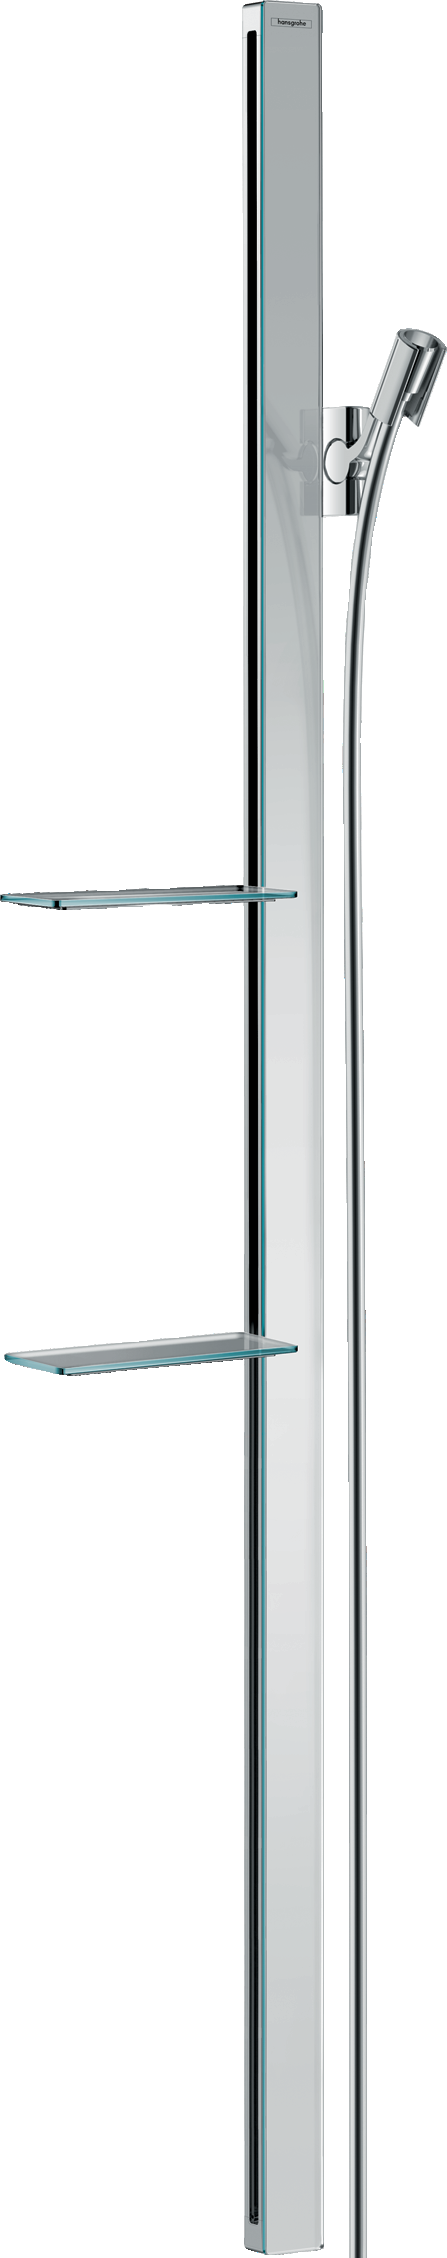 Unica Shower bar E 150 cm with Isiflex shower hose 160 cm and shelves